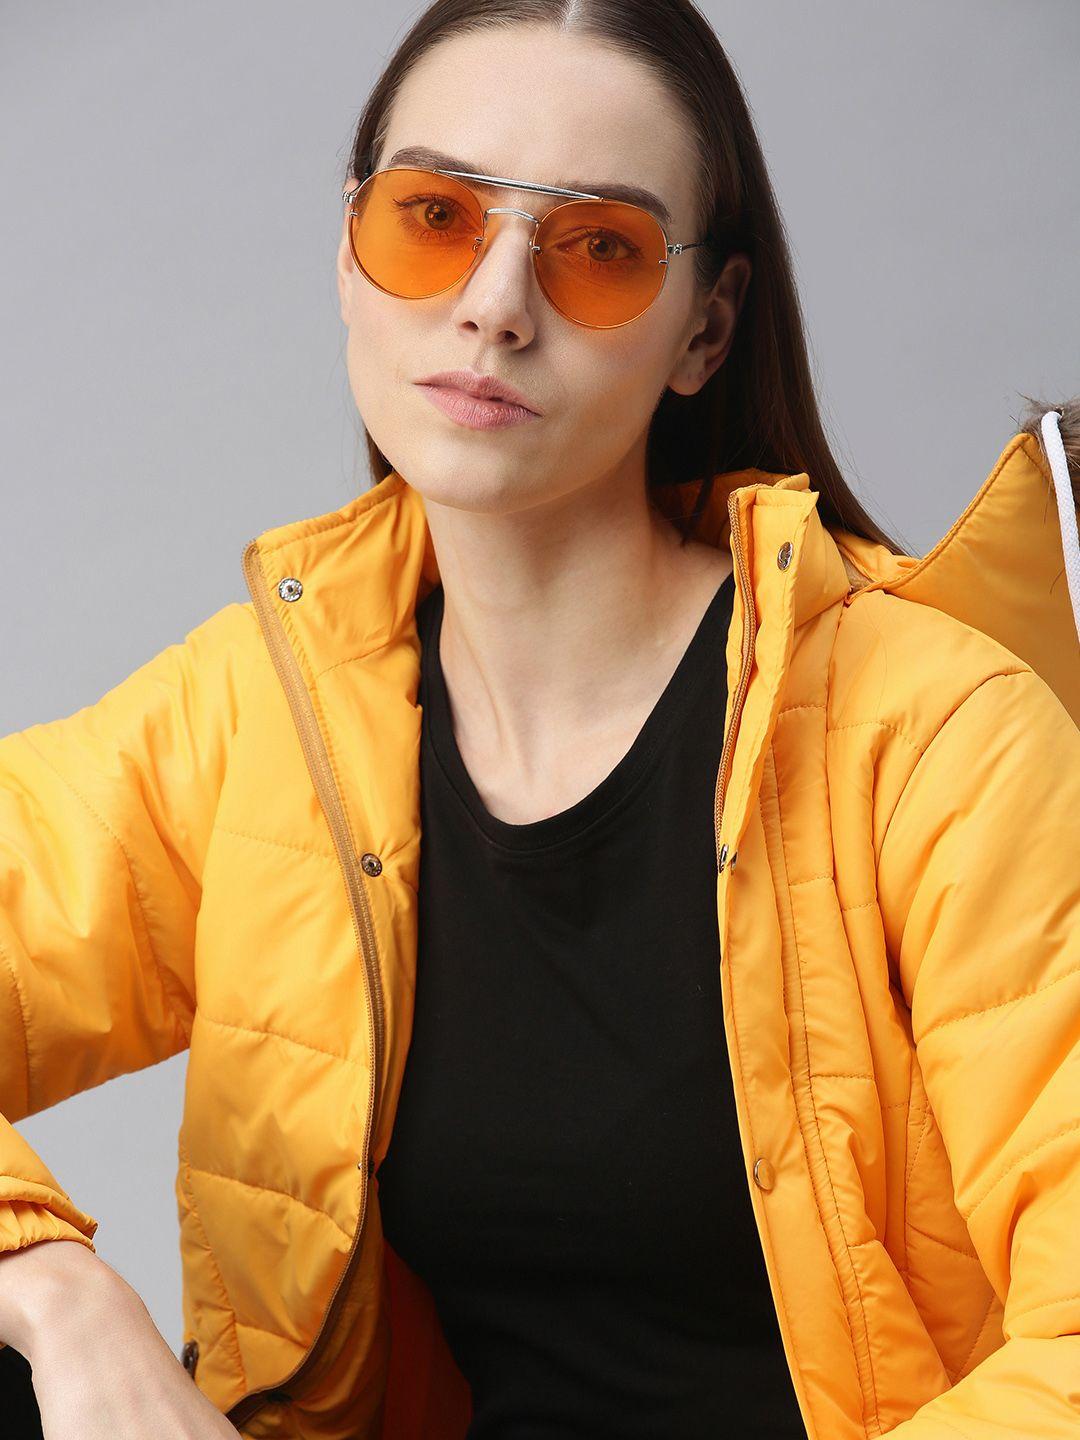 voxati women yellow padded jacket